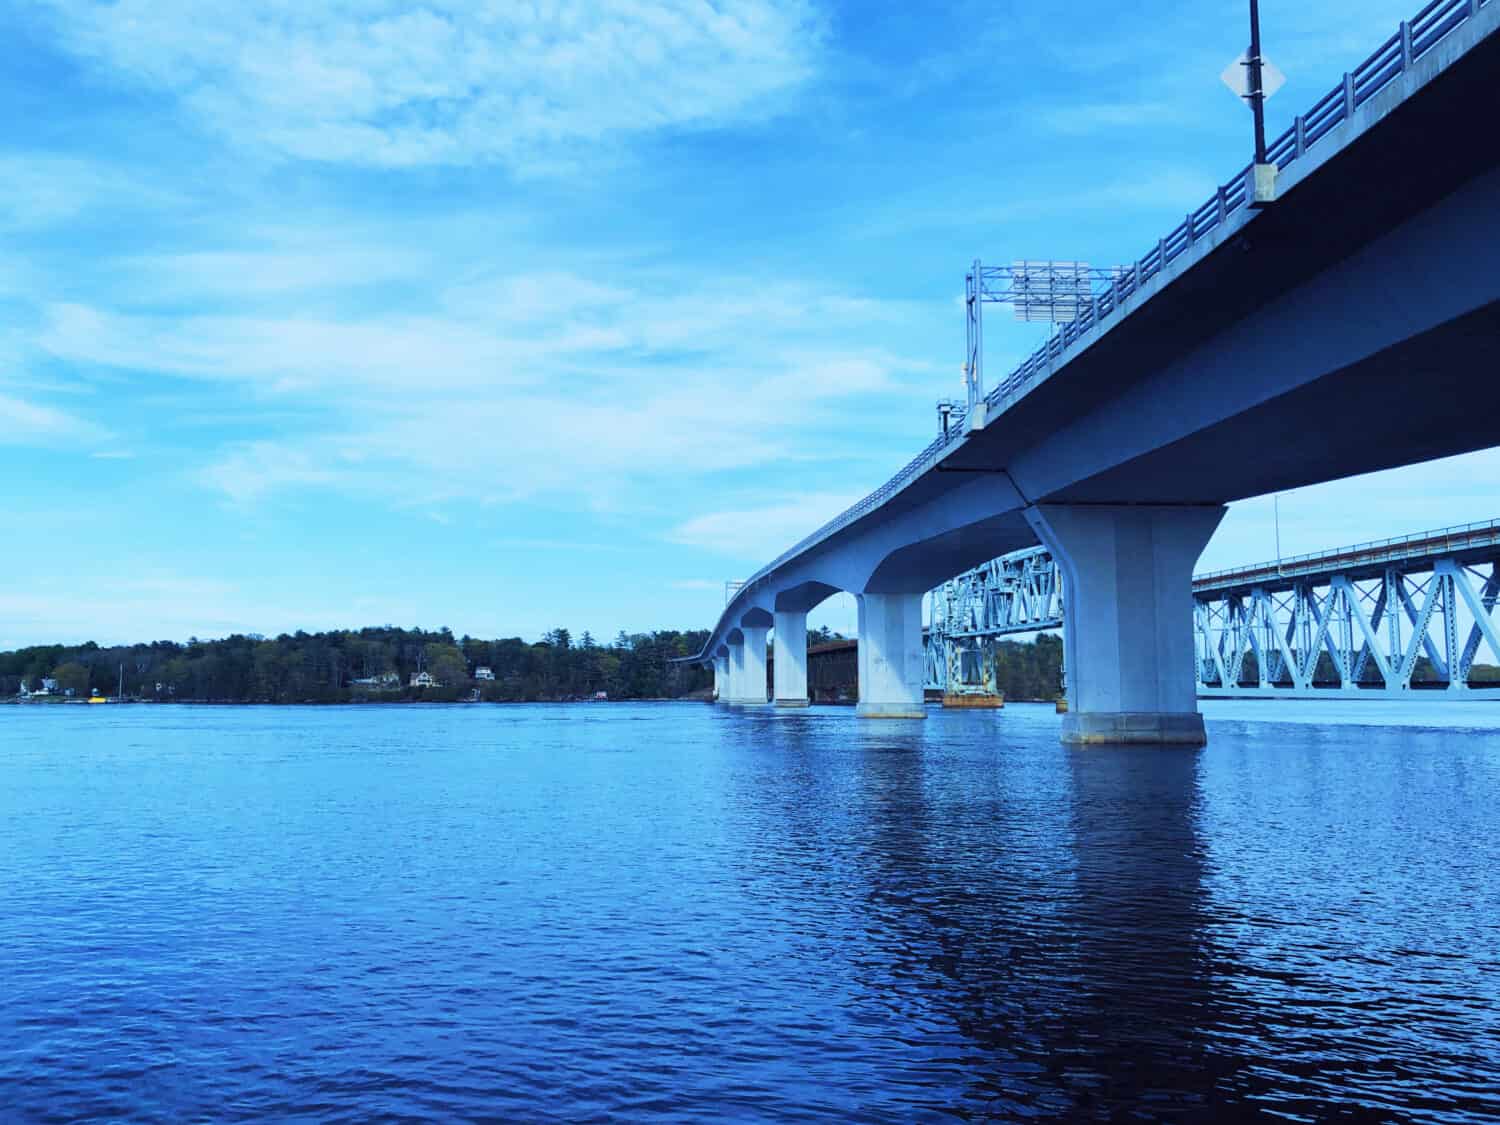 Il ponte Sagadahoc e il ponte Carlton tra la città di Bath e la città di Woolwich, nel Maine, che trasportano la US Route 1 (US 1) sul fiume Kennebec.